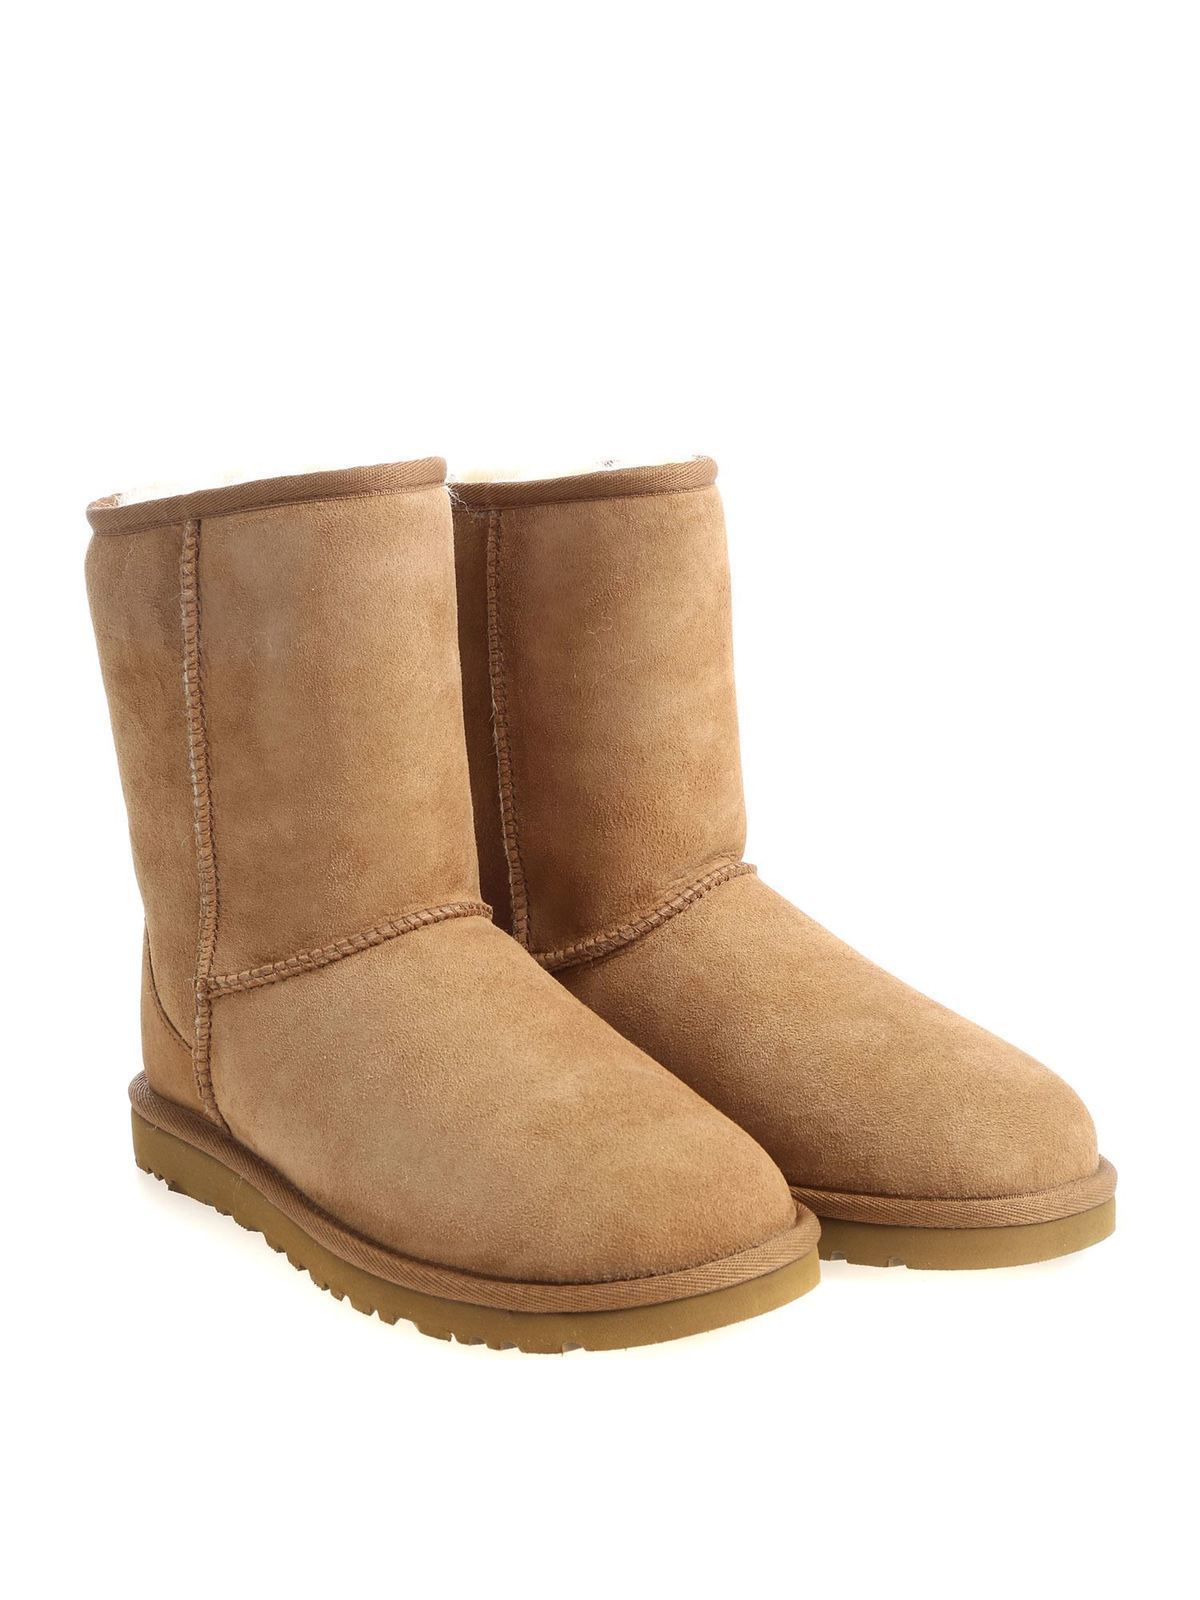 Prijs stel je voor Verzending Boots Ugg - Sheepskin boots - 5825CHE | Shop online at iKRIX